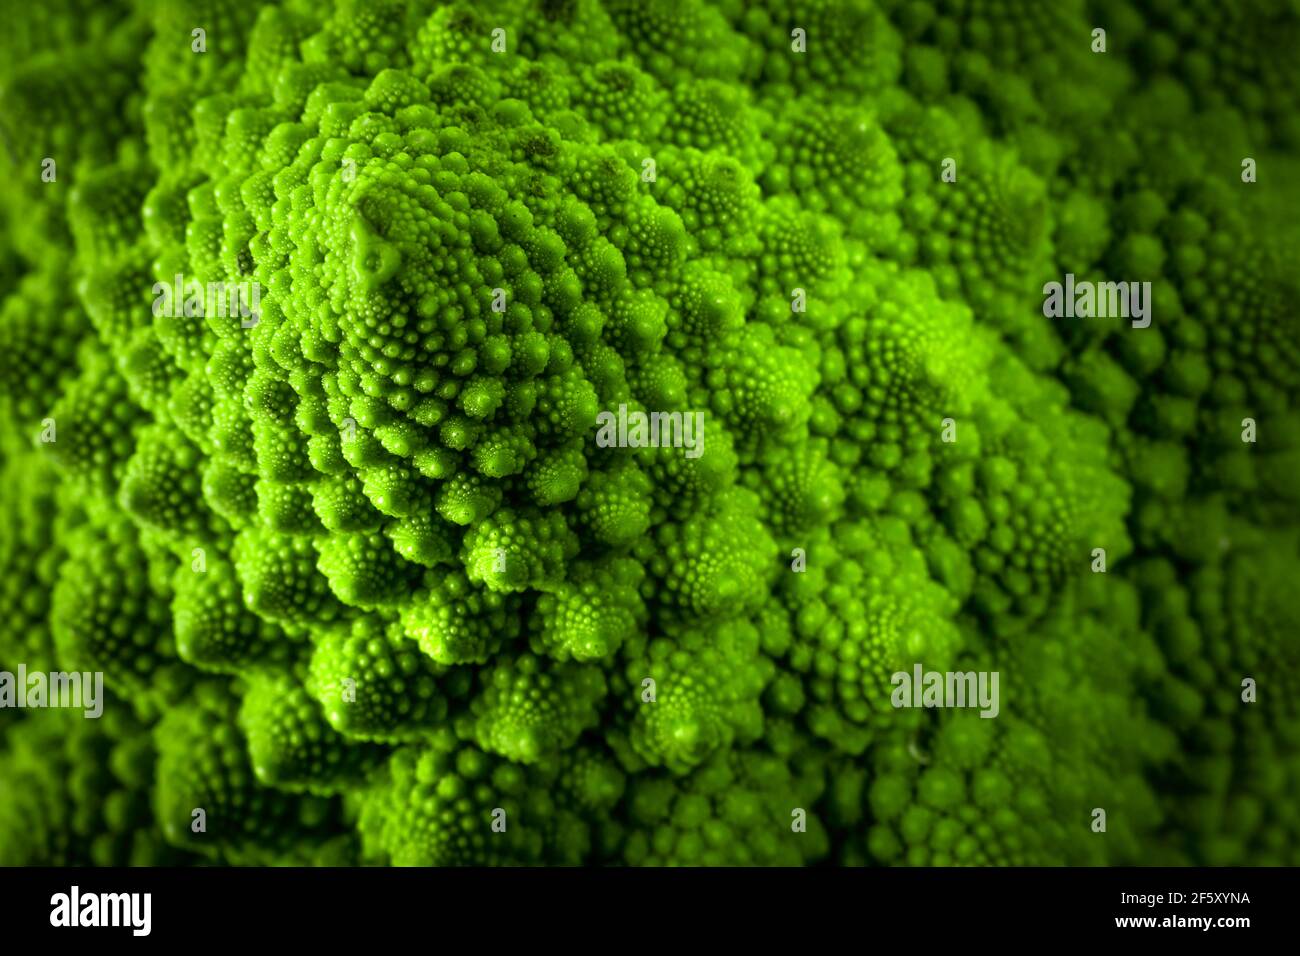 Nahaufnahme der grünen und fraktalen Oberfläche eines romanesco Brokkoli Stockfoto